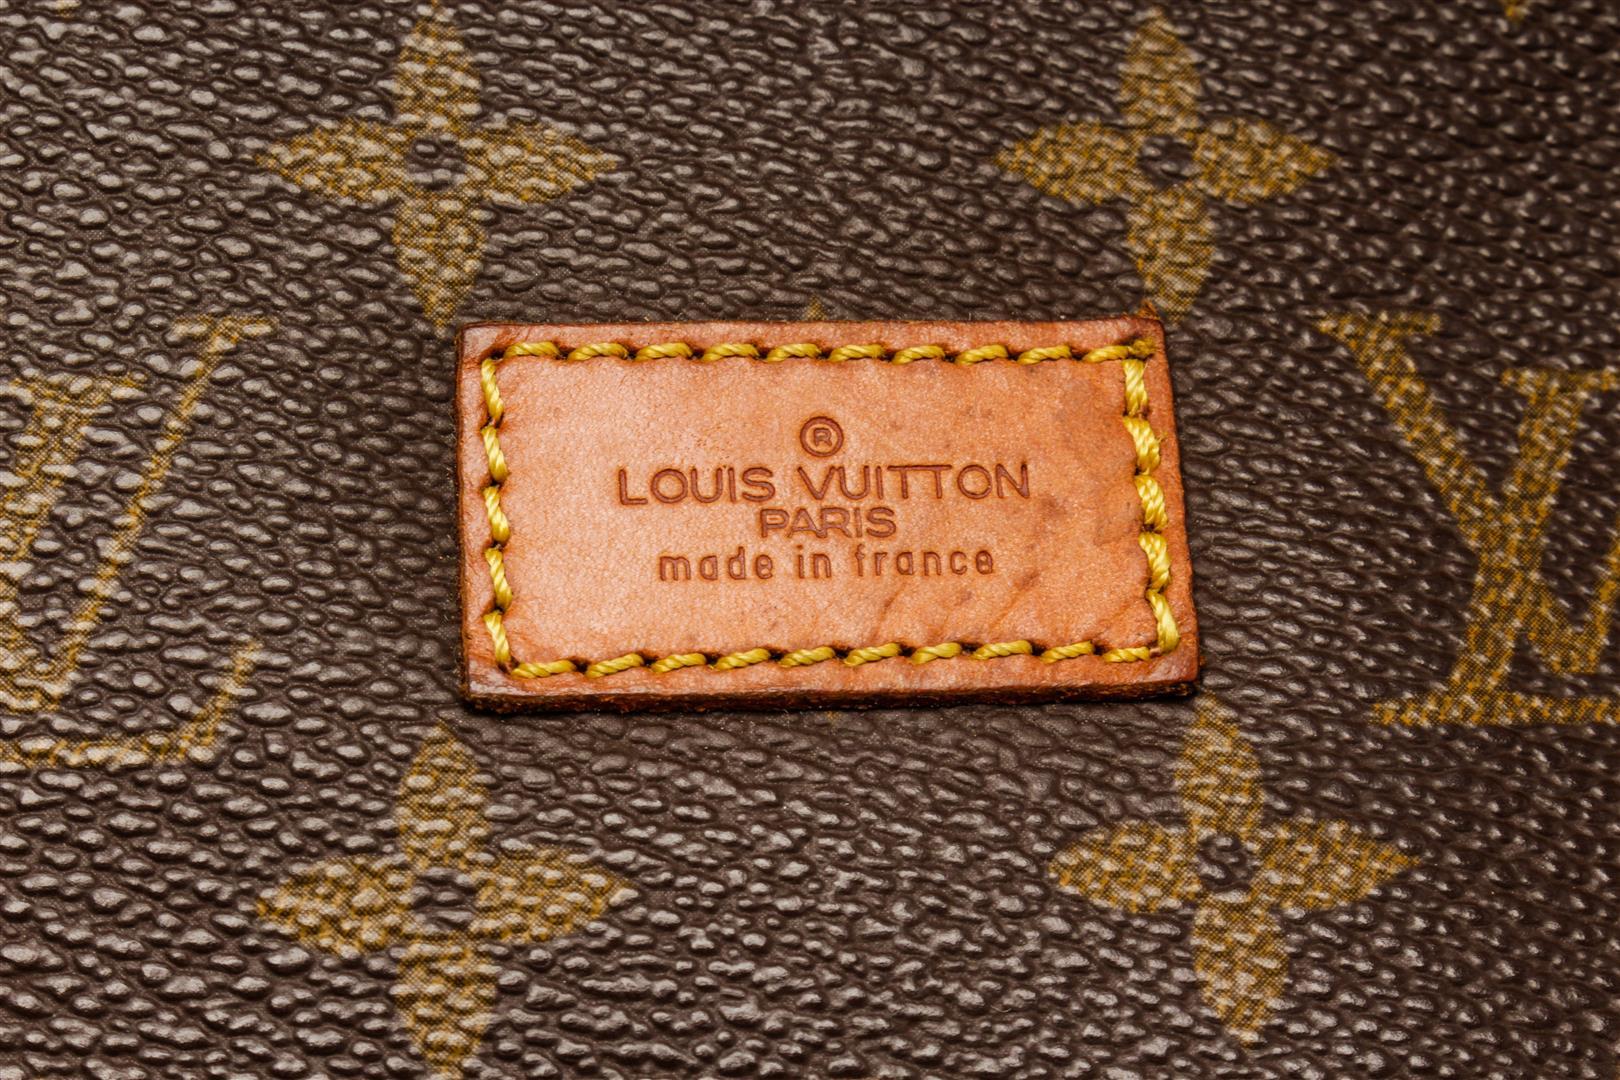 Louis Vuitton Brown Monogram Canvas Saumur 35cm Shoulder Bag